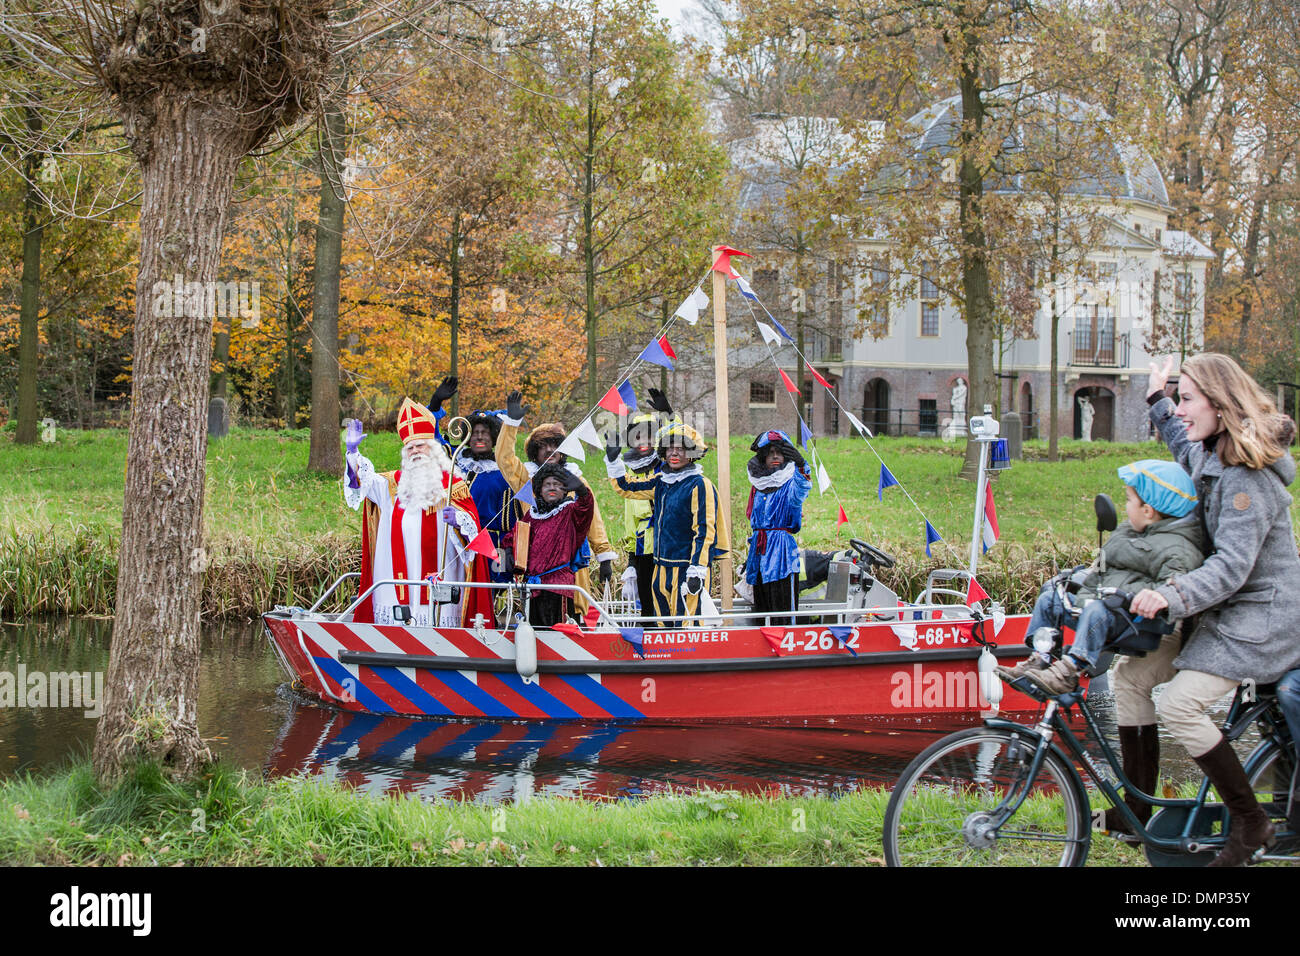 Niederlande,'s-Graveland, Festival des Sinterklaas, jährlich am 5. Dezember gefeiert. Ankunft des Heiligen mit schwarzen Petes per Boot Stockfoto